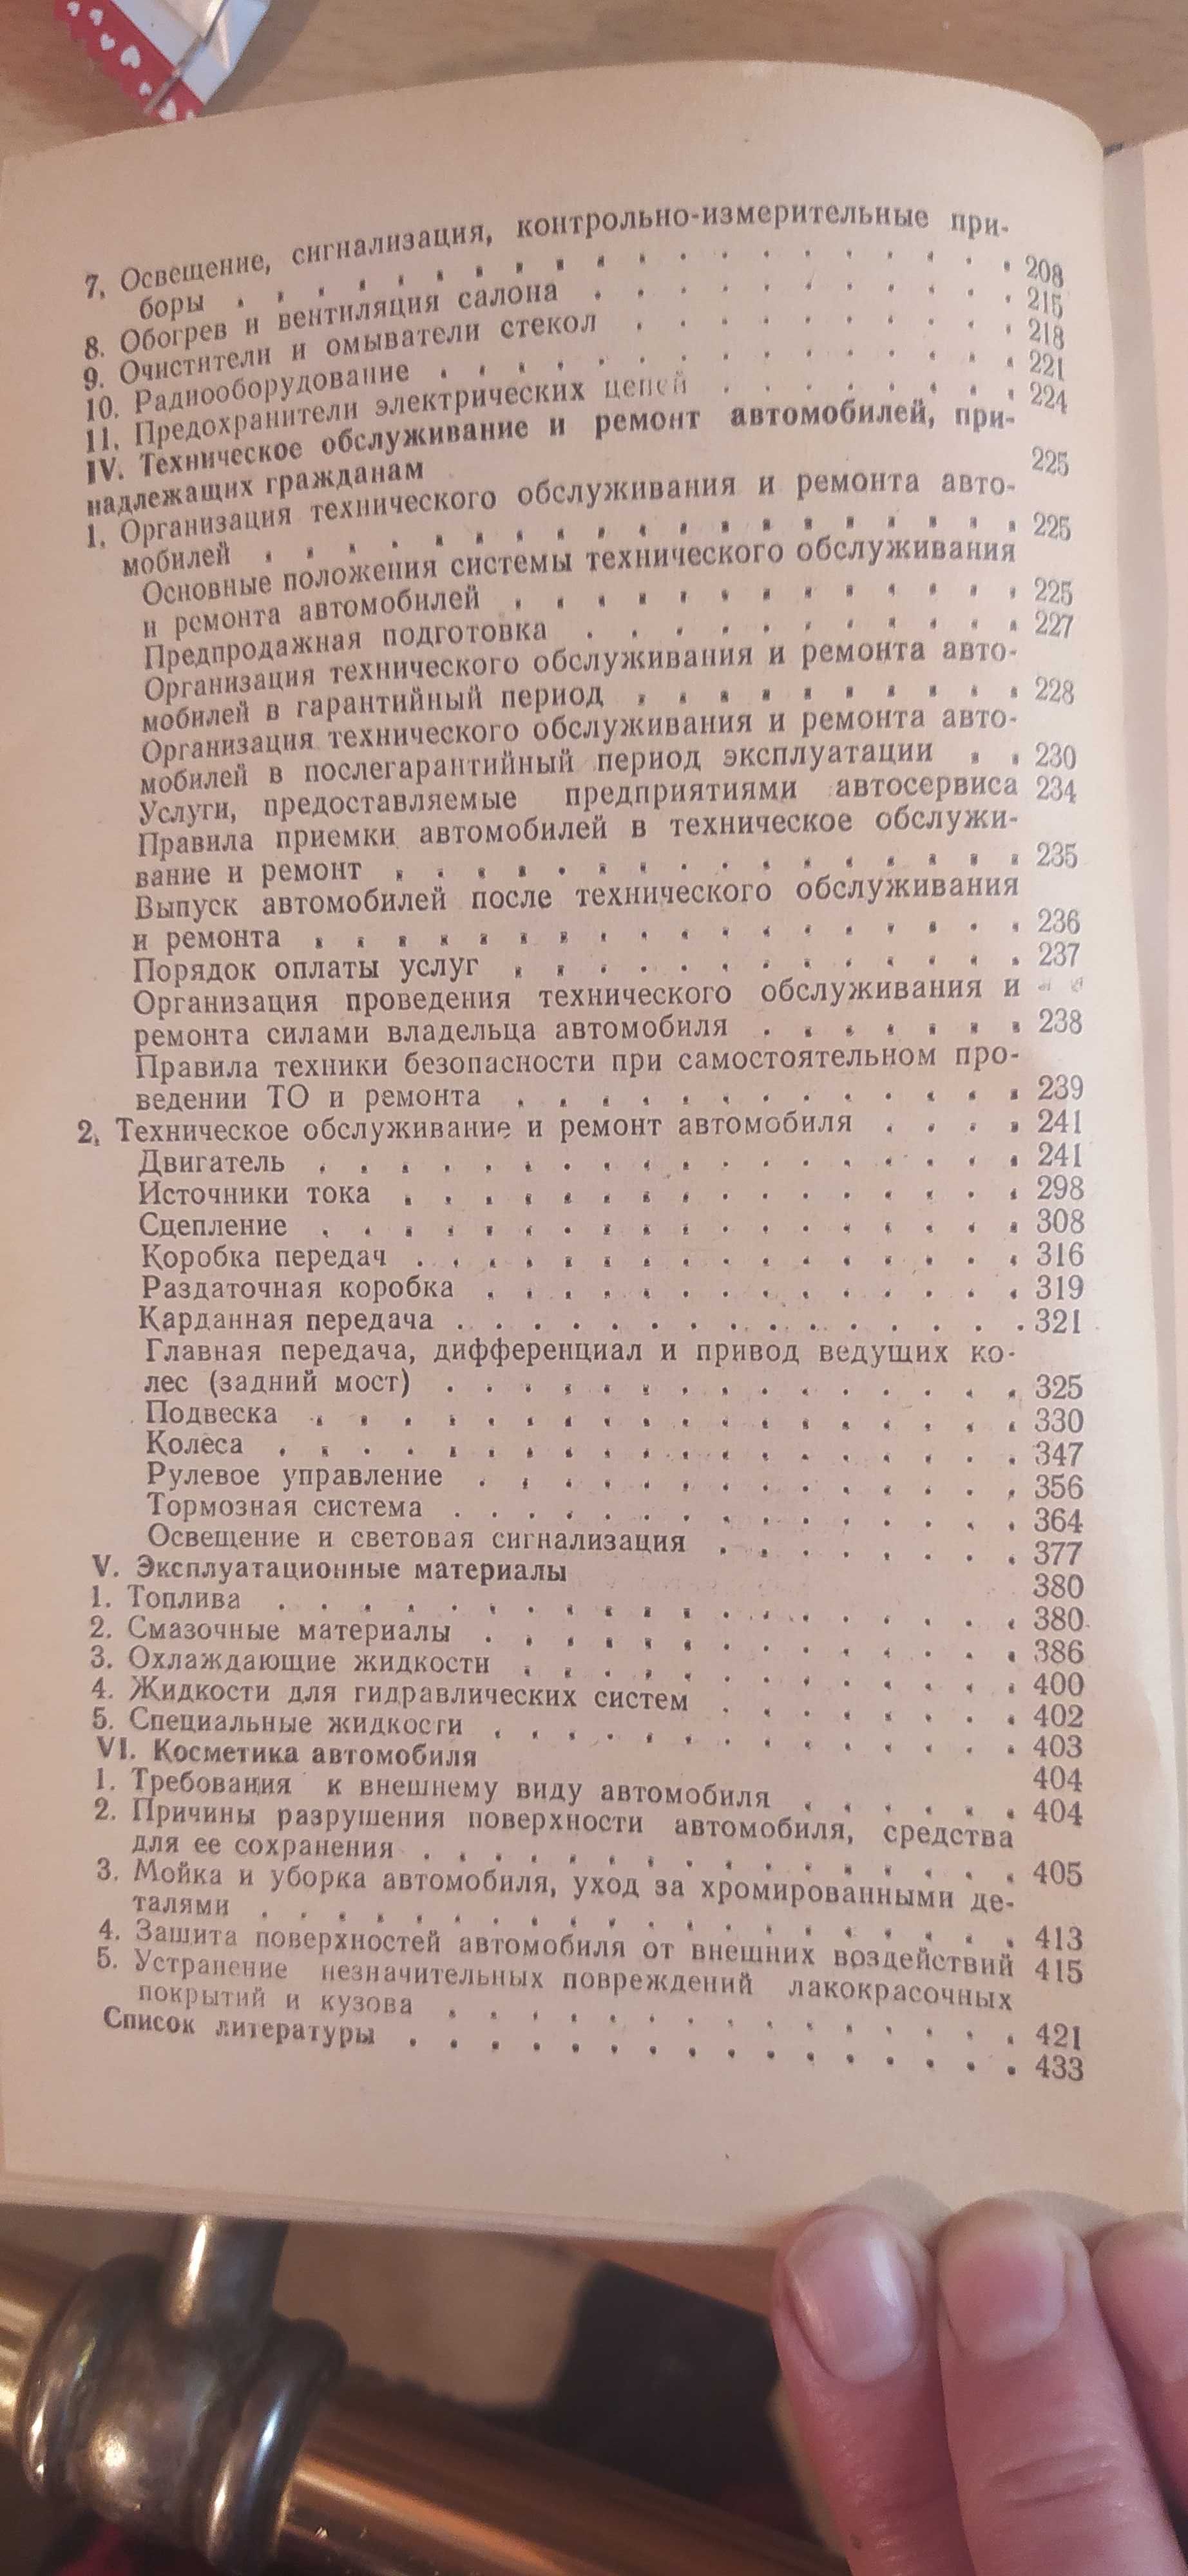 Книга Справочник автолюбителя авто ЗАЗ ВАЗ ГАЗ 1990 года выпуска